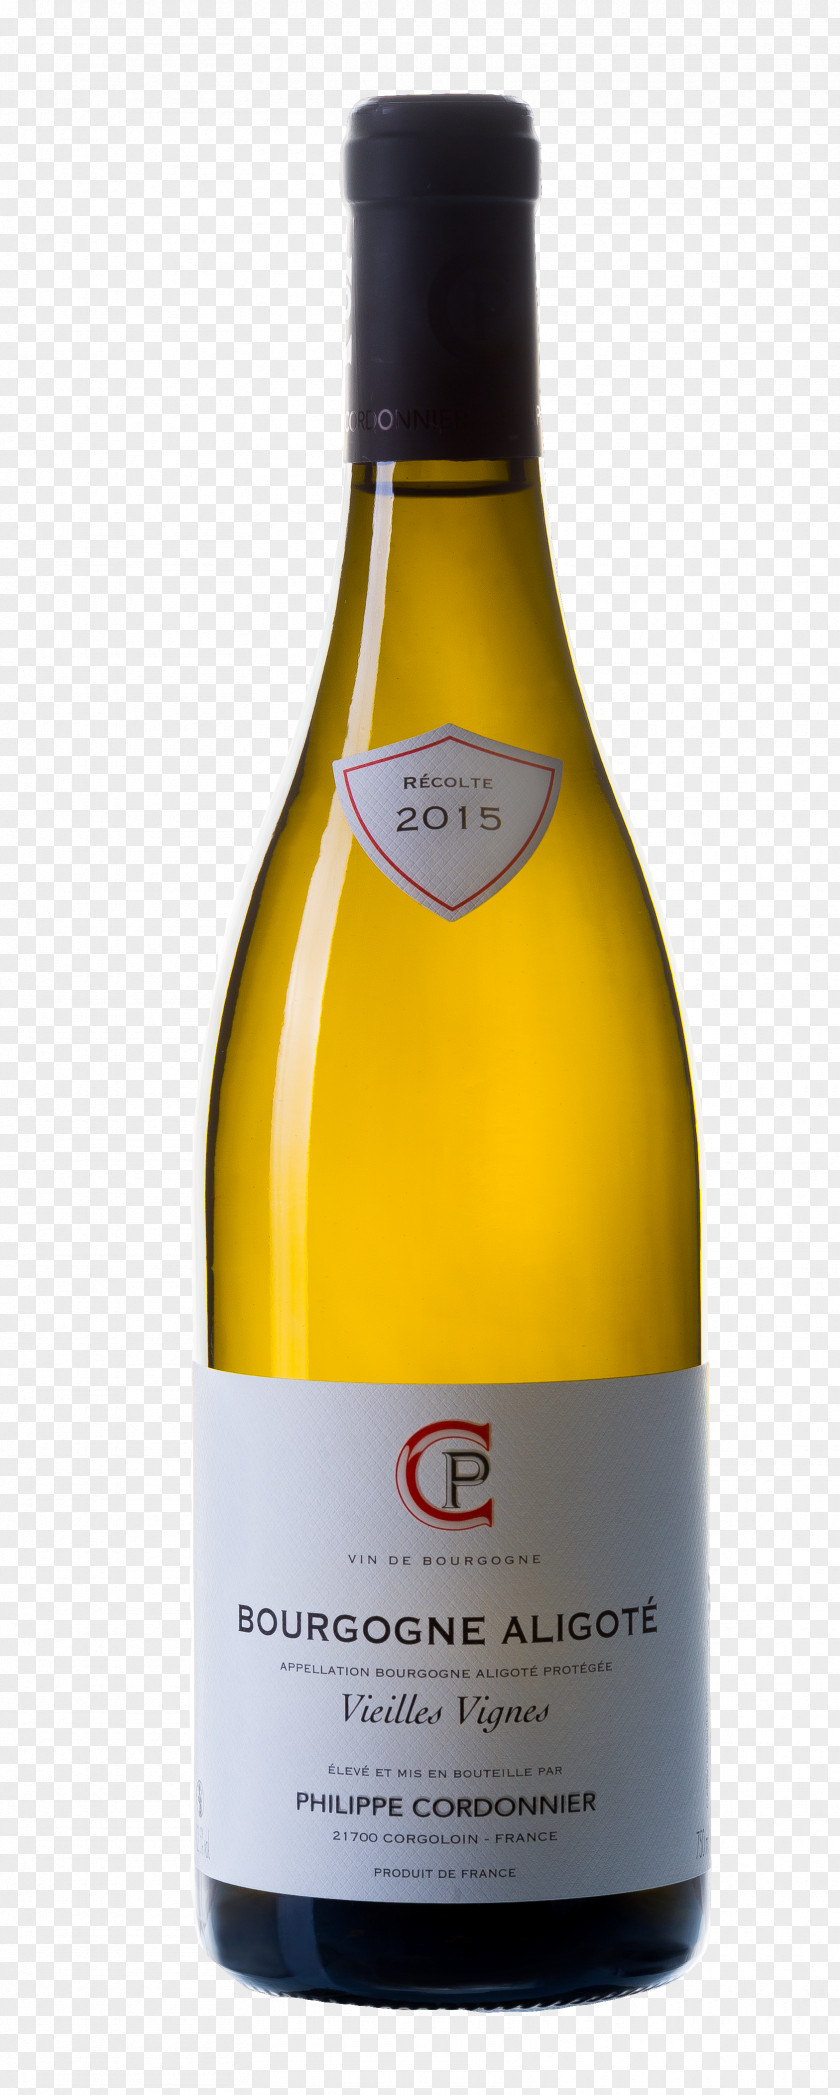 Wine White Burgundy Glass Bottle PNG